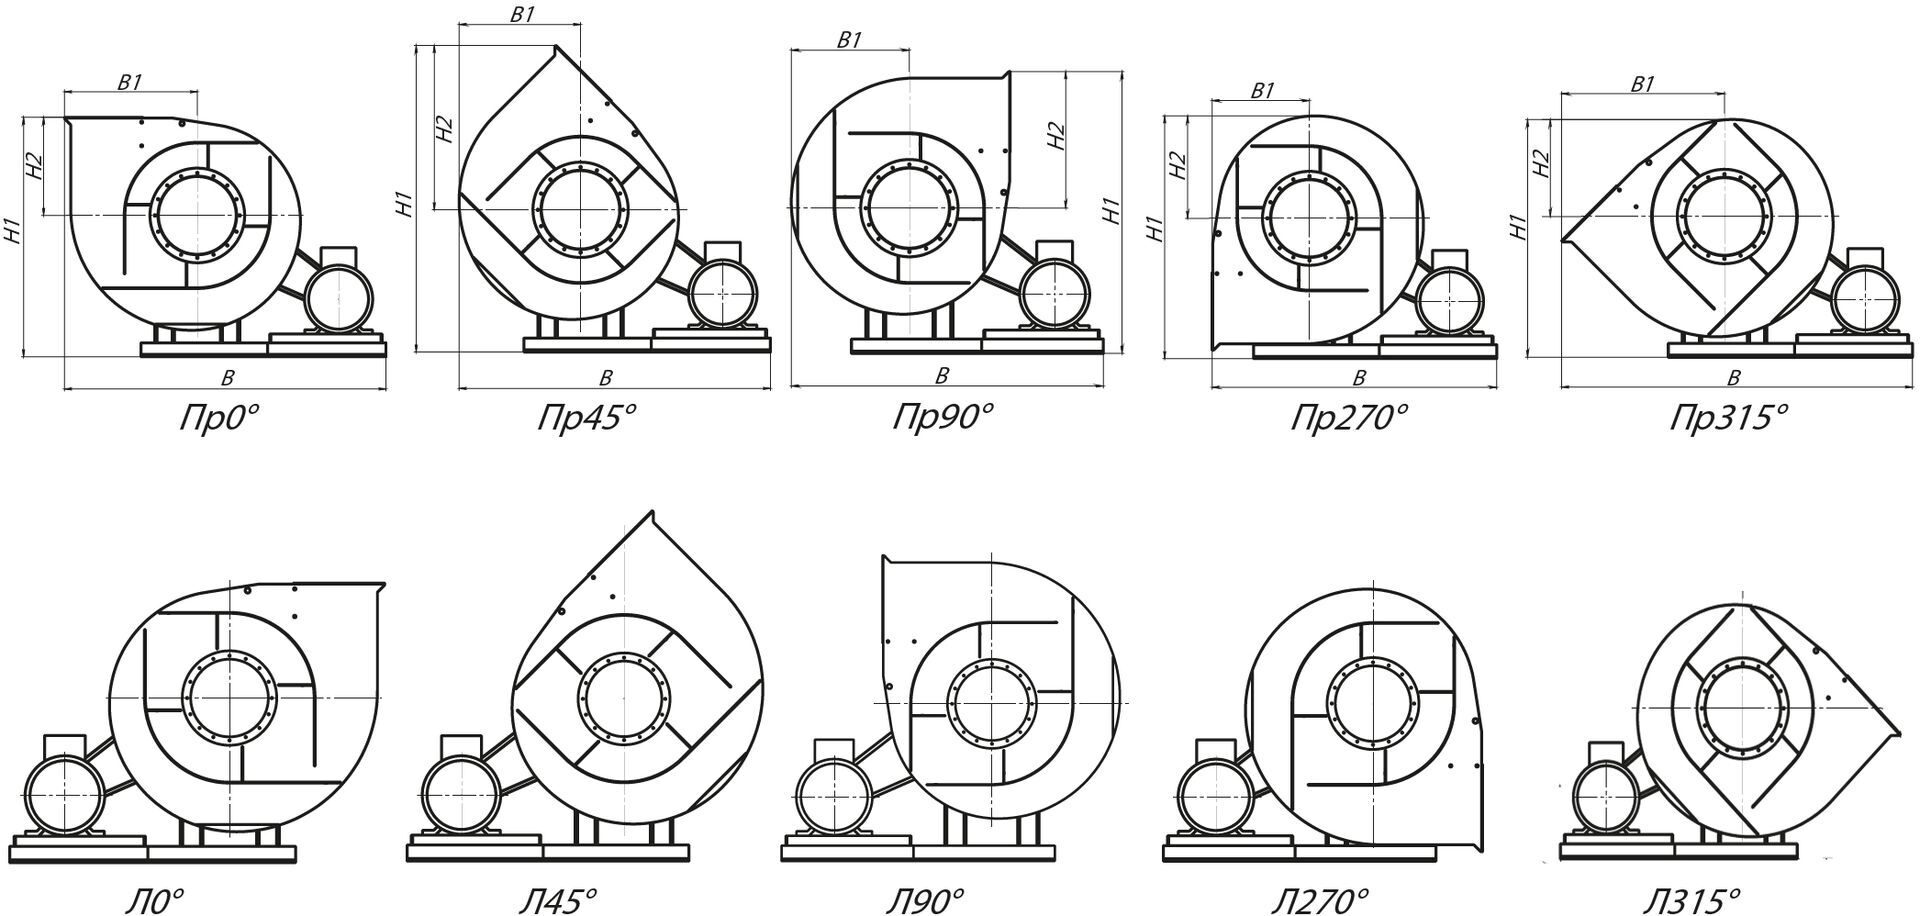 Стандартные варианты углов поворота корпуса вентиляторов ВРП 115-45-8 (№8) схема 5 (исполнение 5)